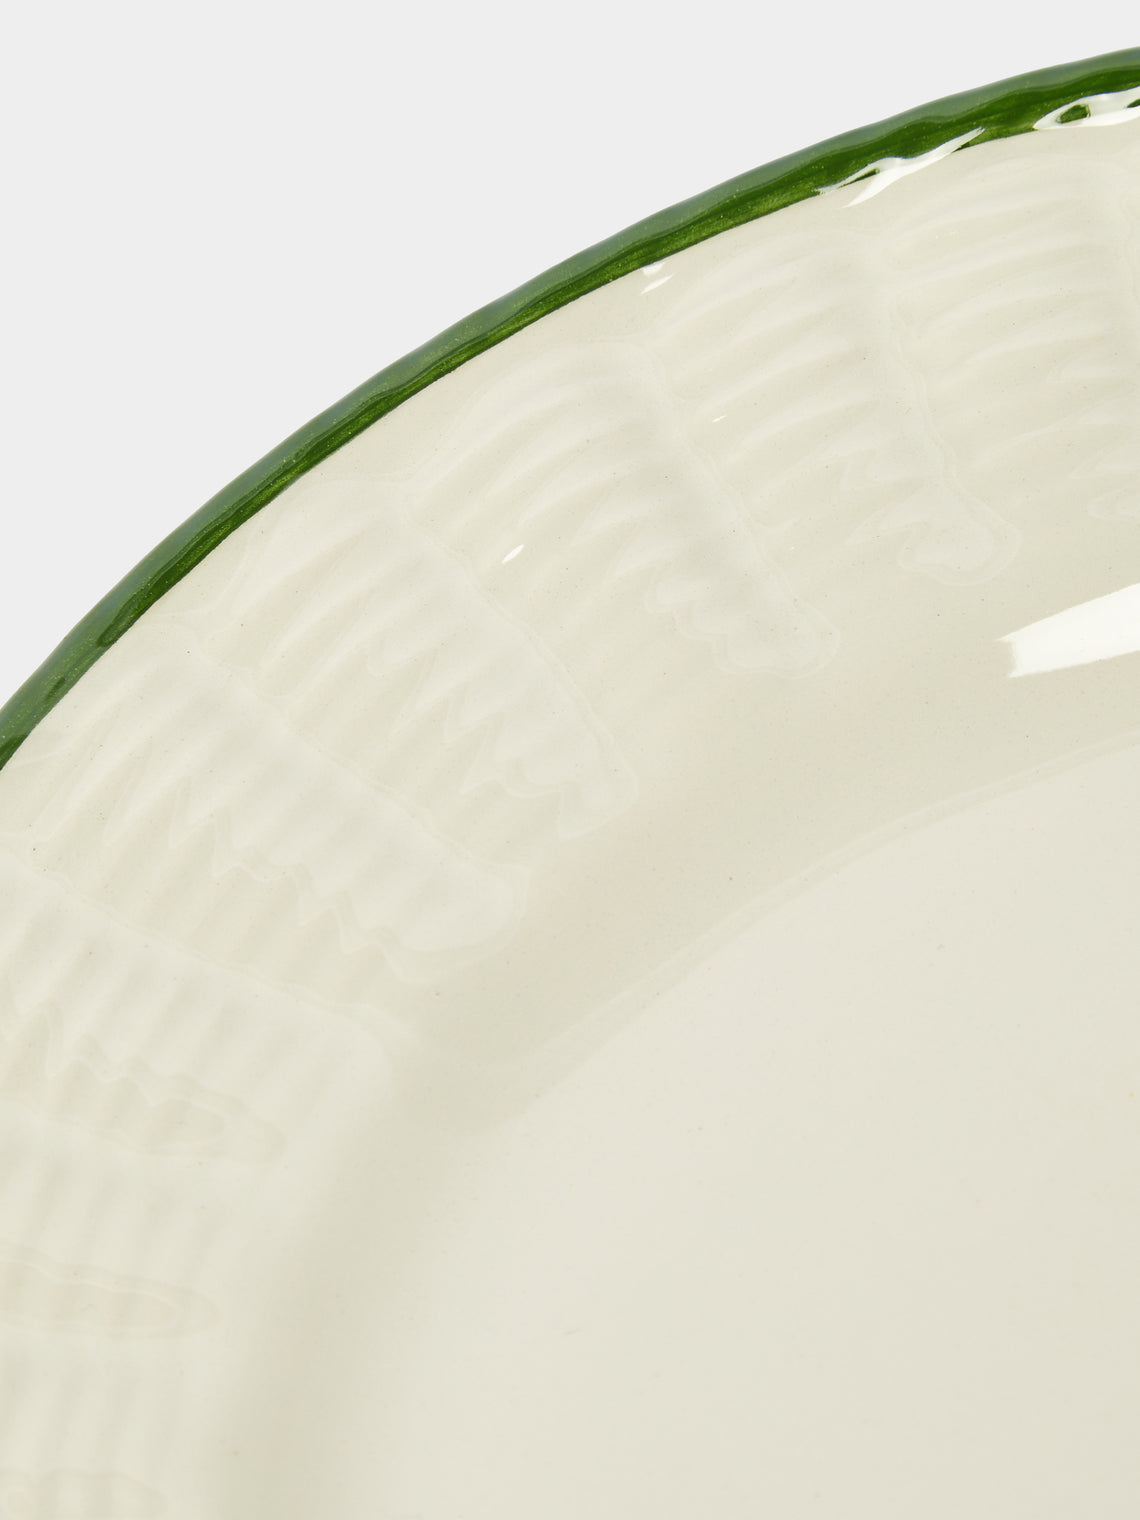 Este Ceramiche - Wicker Hand-Painted Ceramic Dessert Plates (Set of 4) -  - ABASK